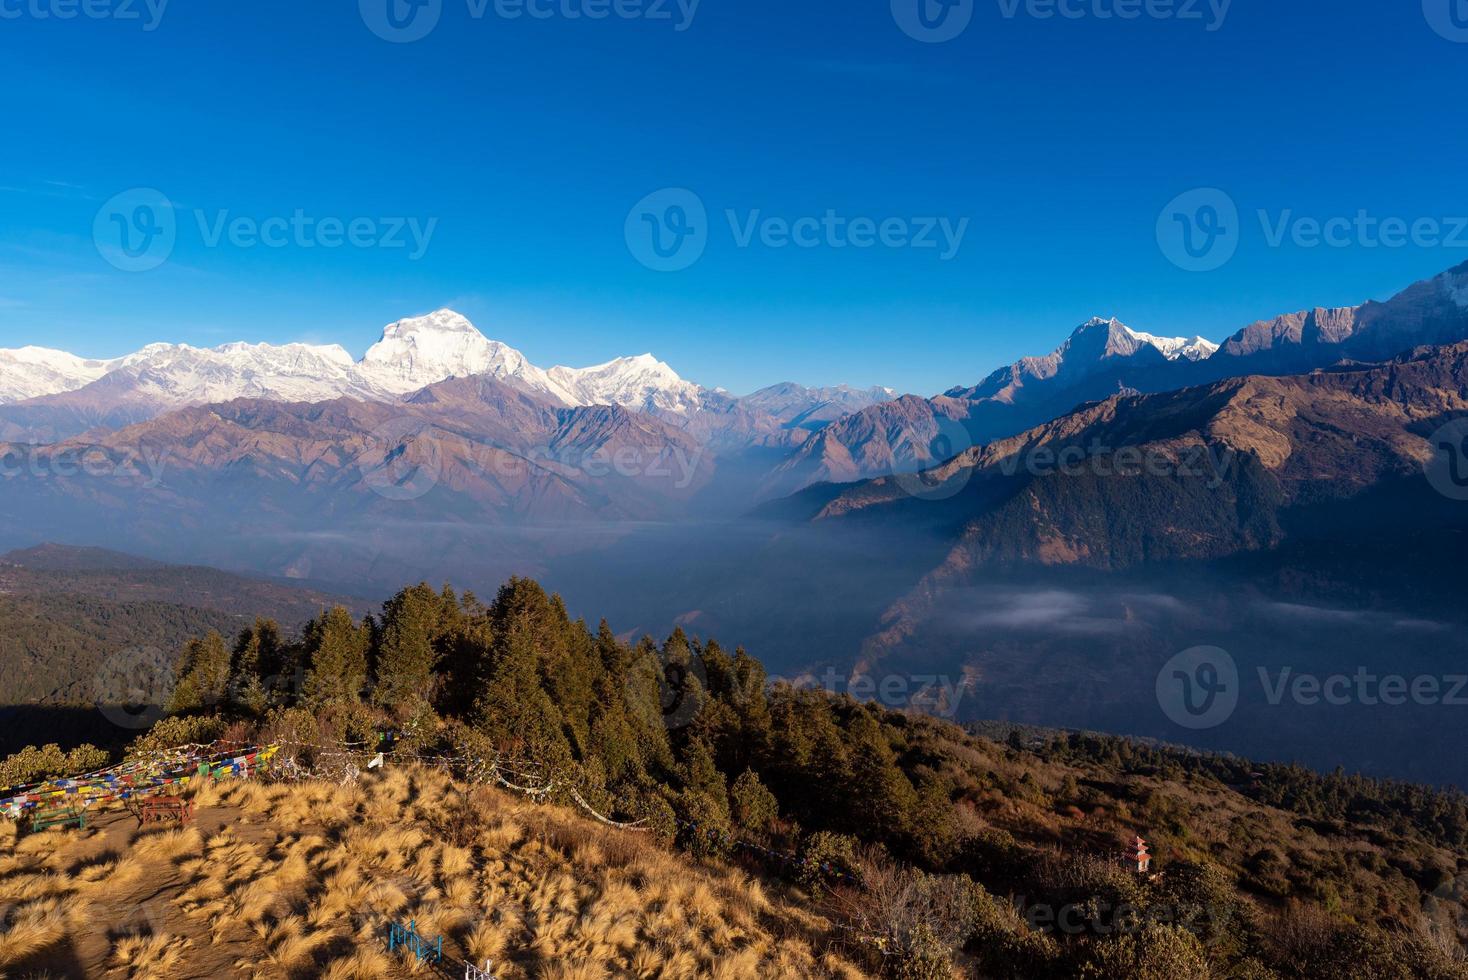 naturvy över himalayas bergskedja vid utsiktspunkten Poon hill, nepal. Poon hill är den berömda utsiktspunkten i byn Gorepani för att se vacker soluppgång över bergskedjan Annapurna i nepal foto